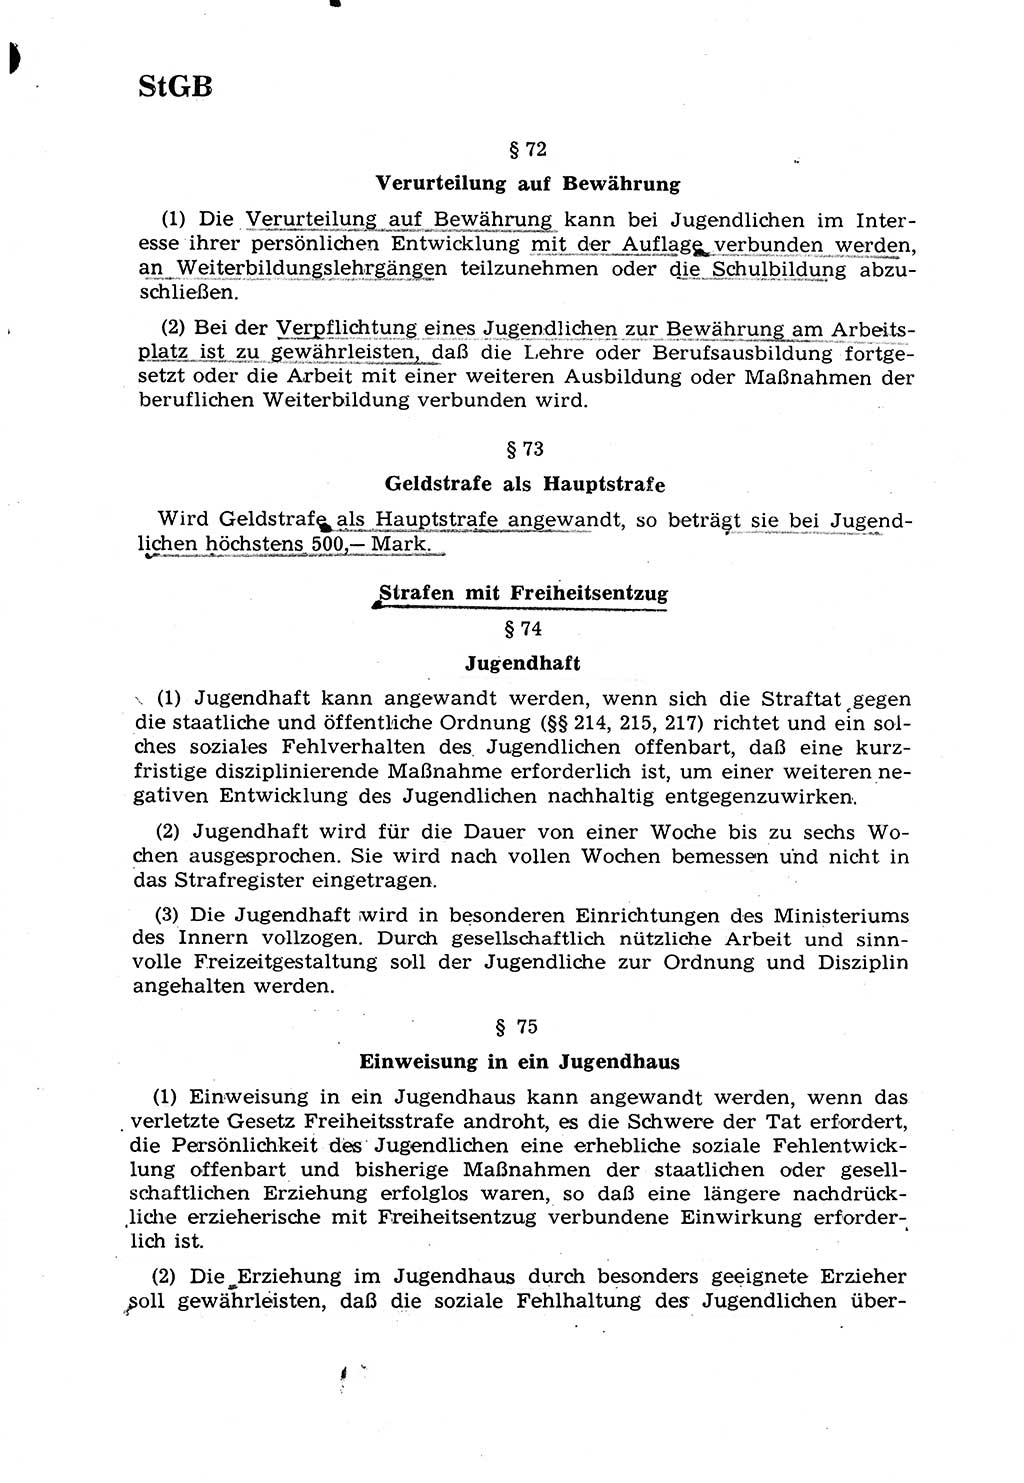 Strafrecht [Deutsche Demokratische Republik (DDR)] 1968, Seite 152 (Strafr. DDR 1968, S. 152)